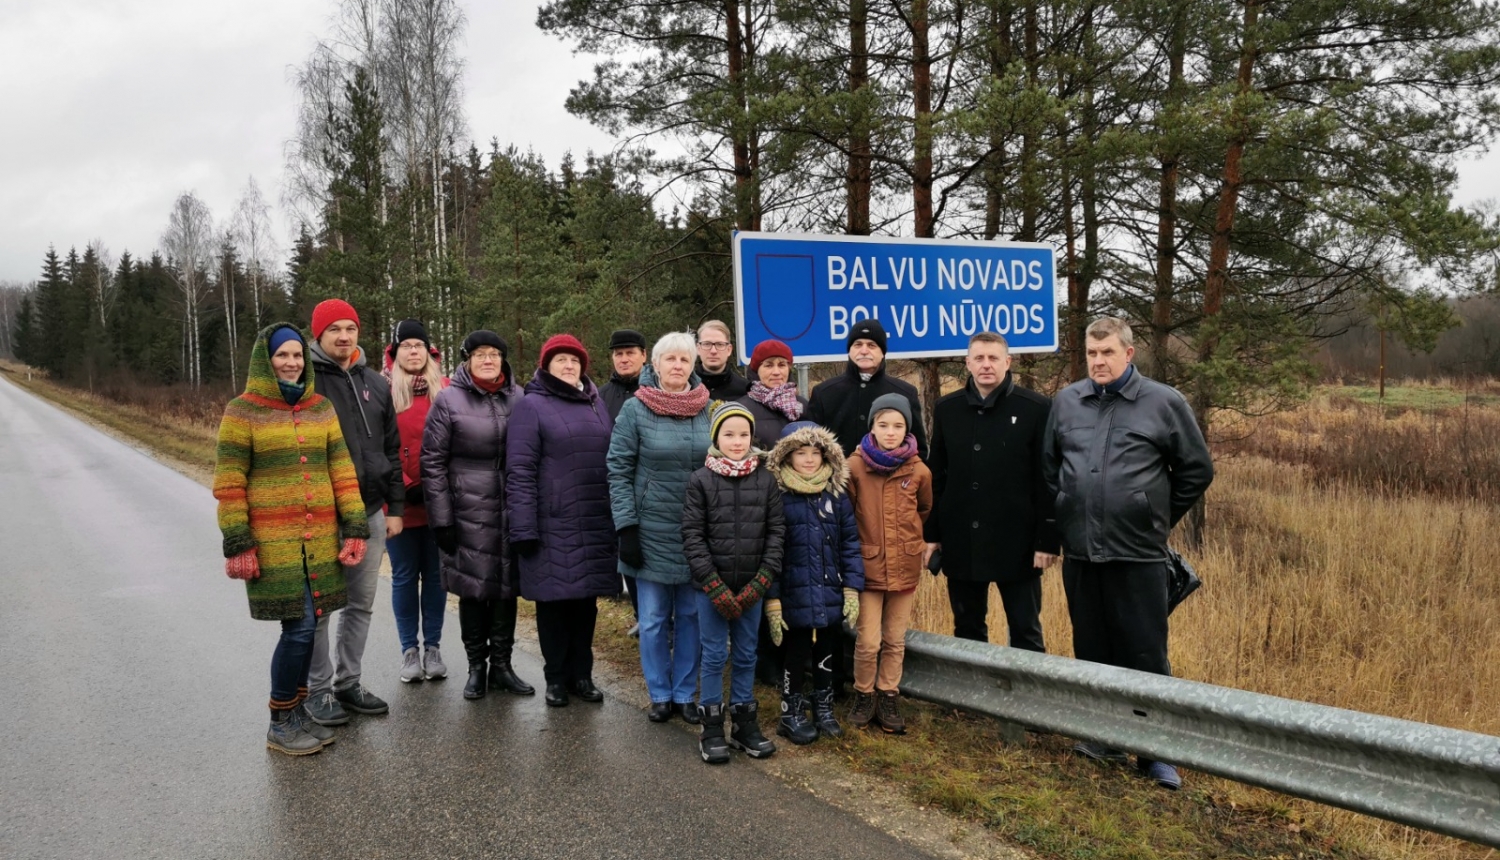 18.novembrī svinīgi atklātas ceļa zīmes Baltinavas, Bērzpils un Kubulus pagastos, abās latviešu rakstu valodās - Balvu novads – Bolvu Nūvods